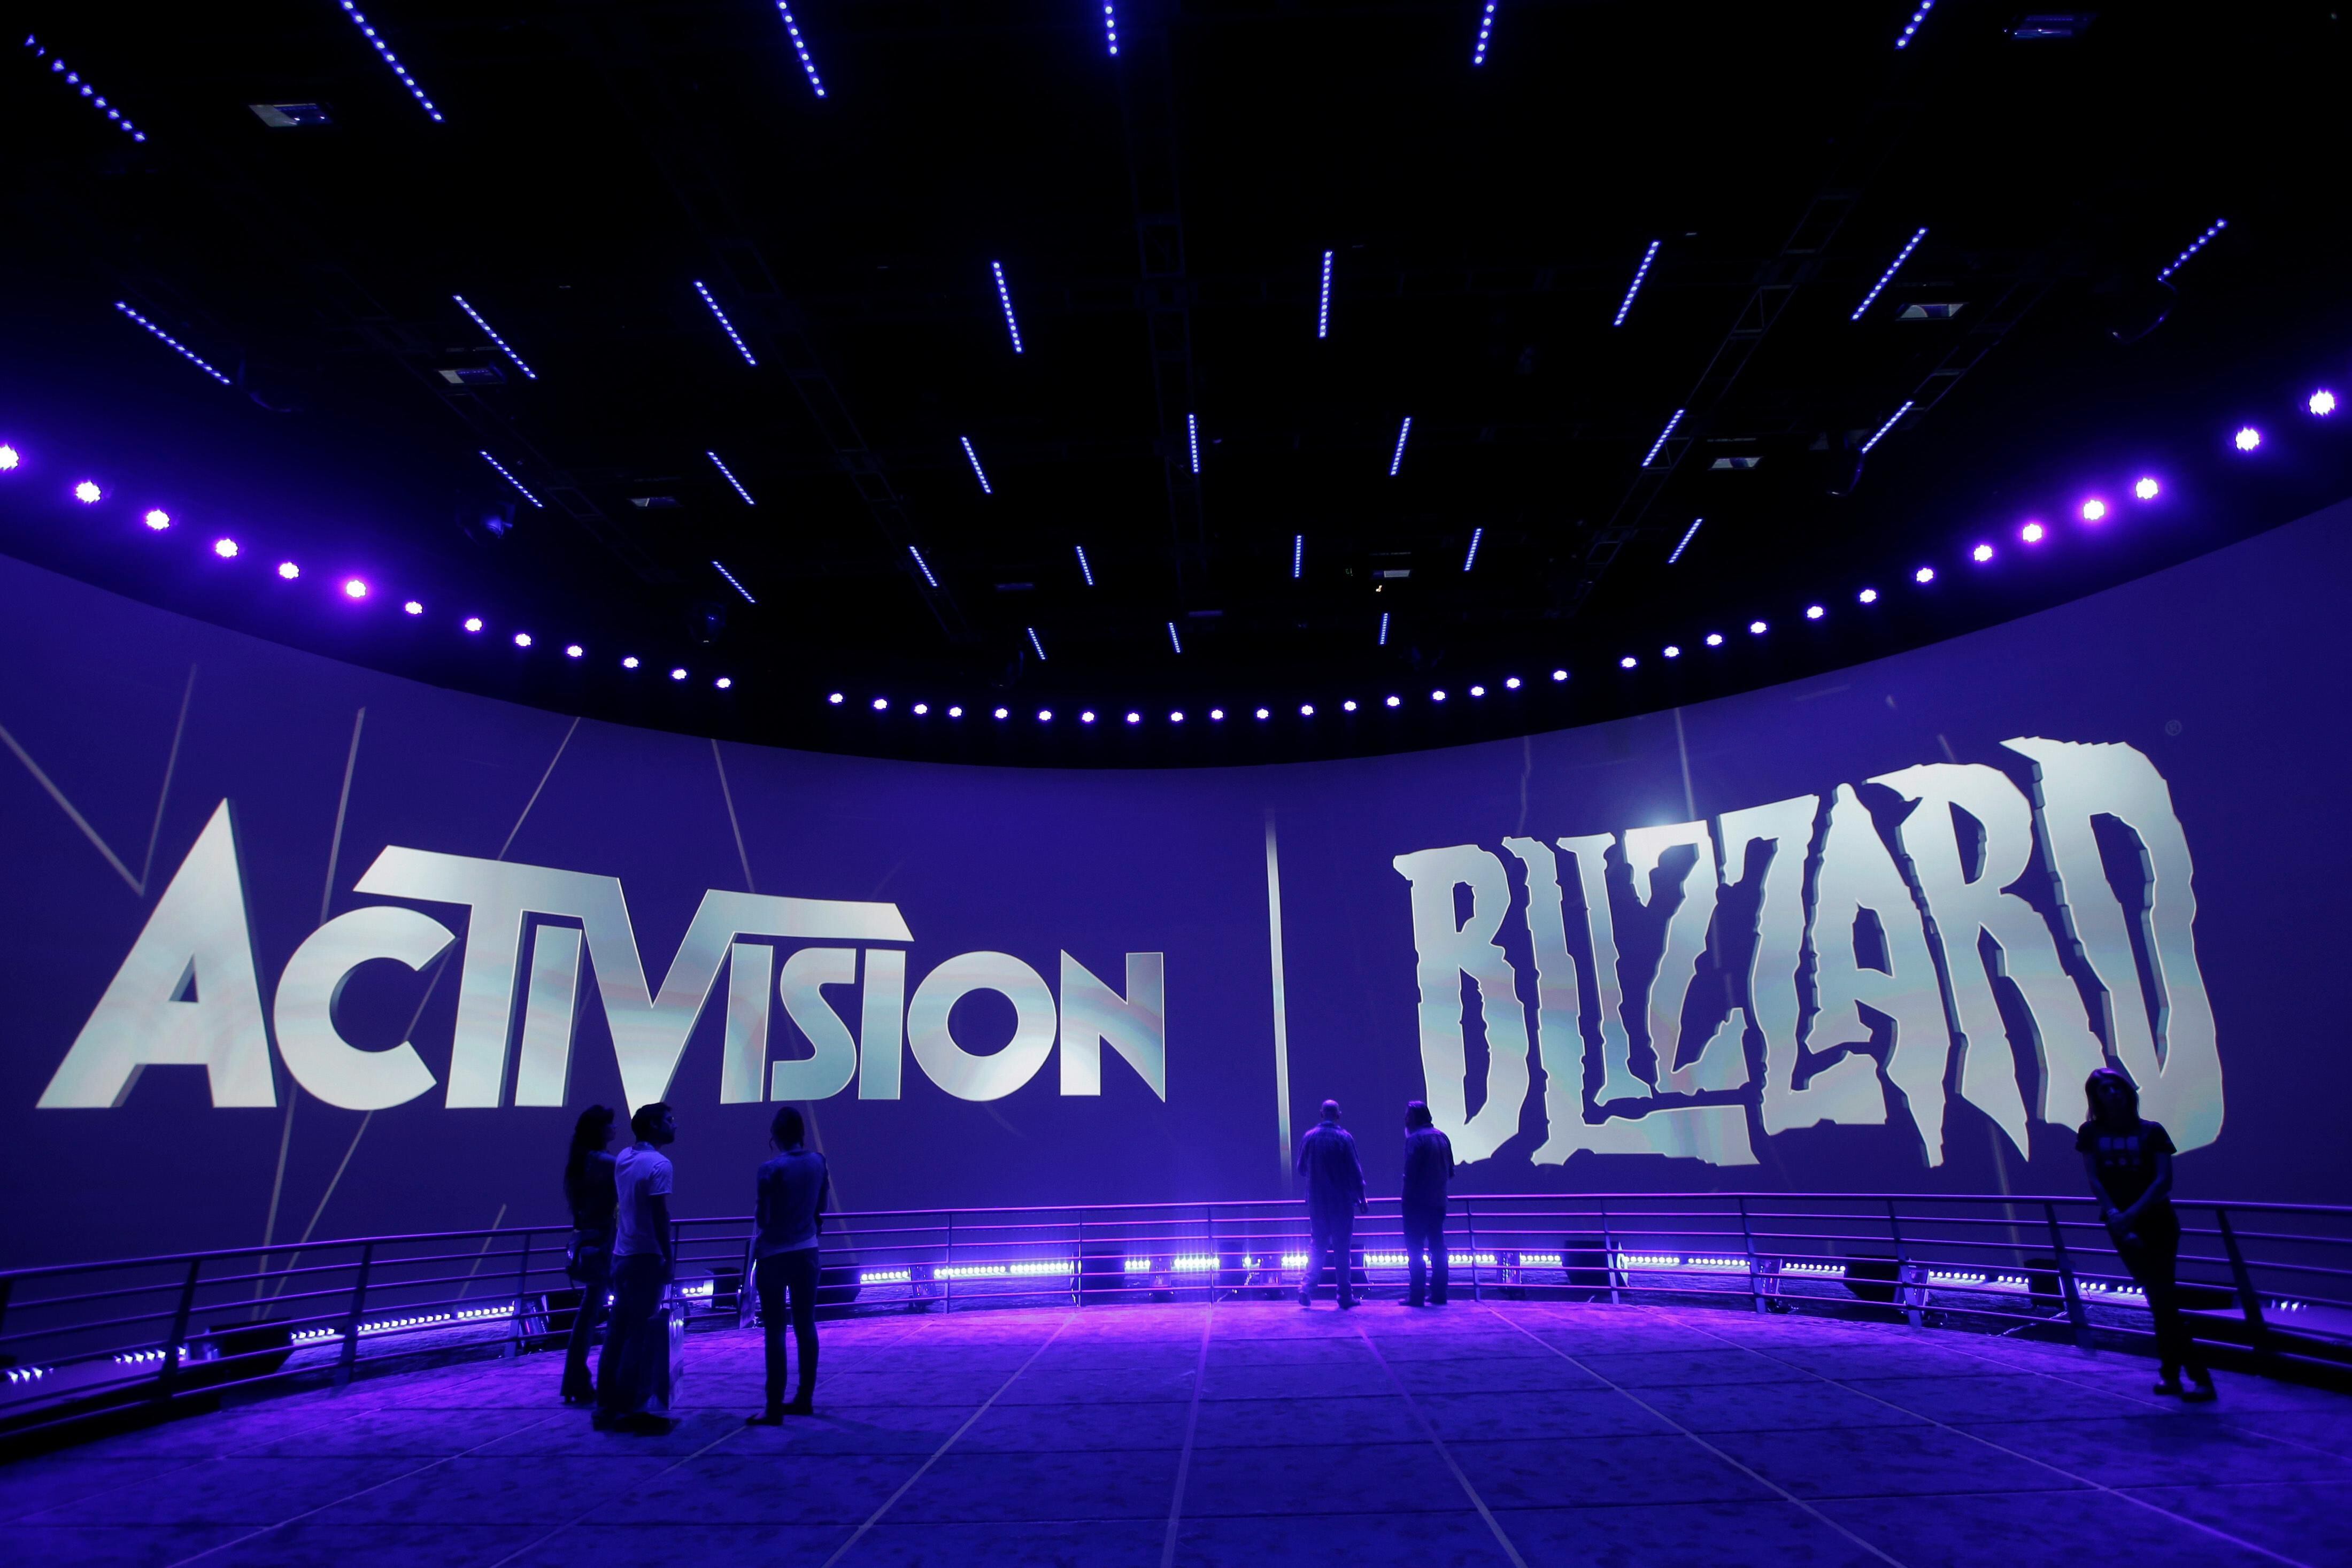 Reino Unido diz que a compra da Activision pode prejudicar os